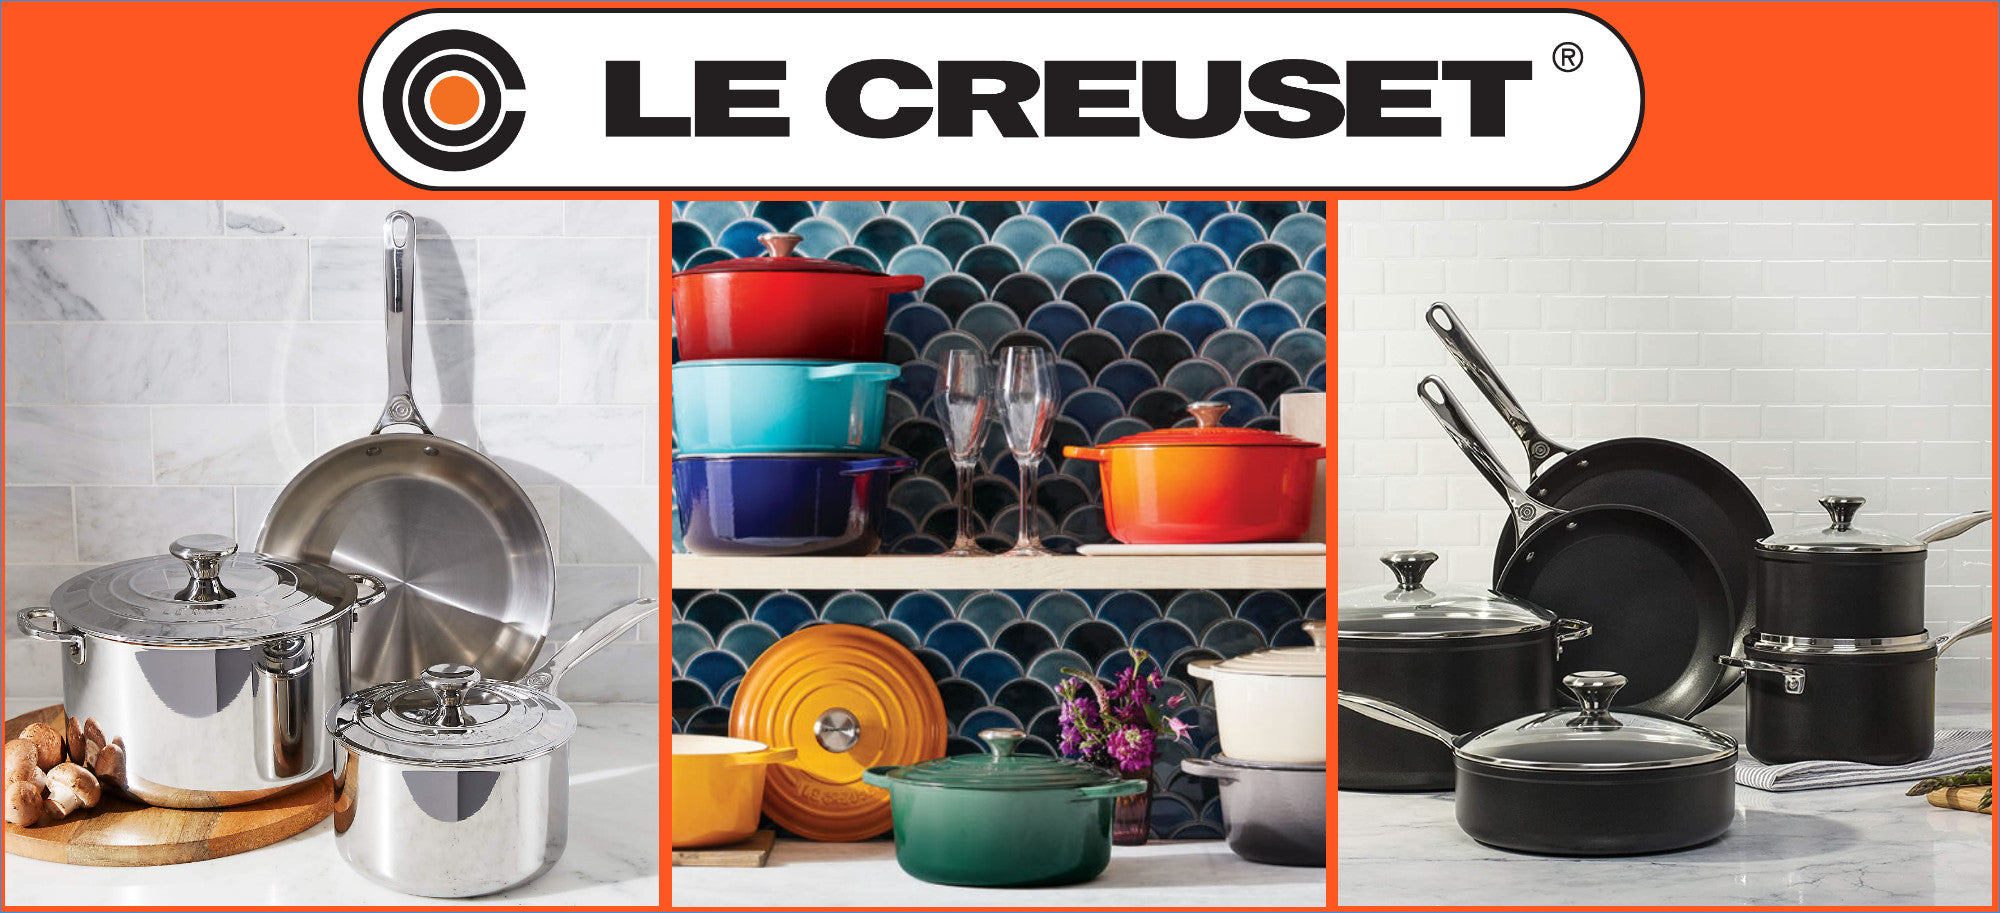 Le Creuset Signature Cast Iron Cookware Set - 9 Piece (Cerise)